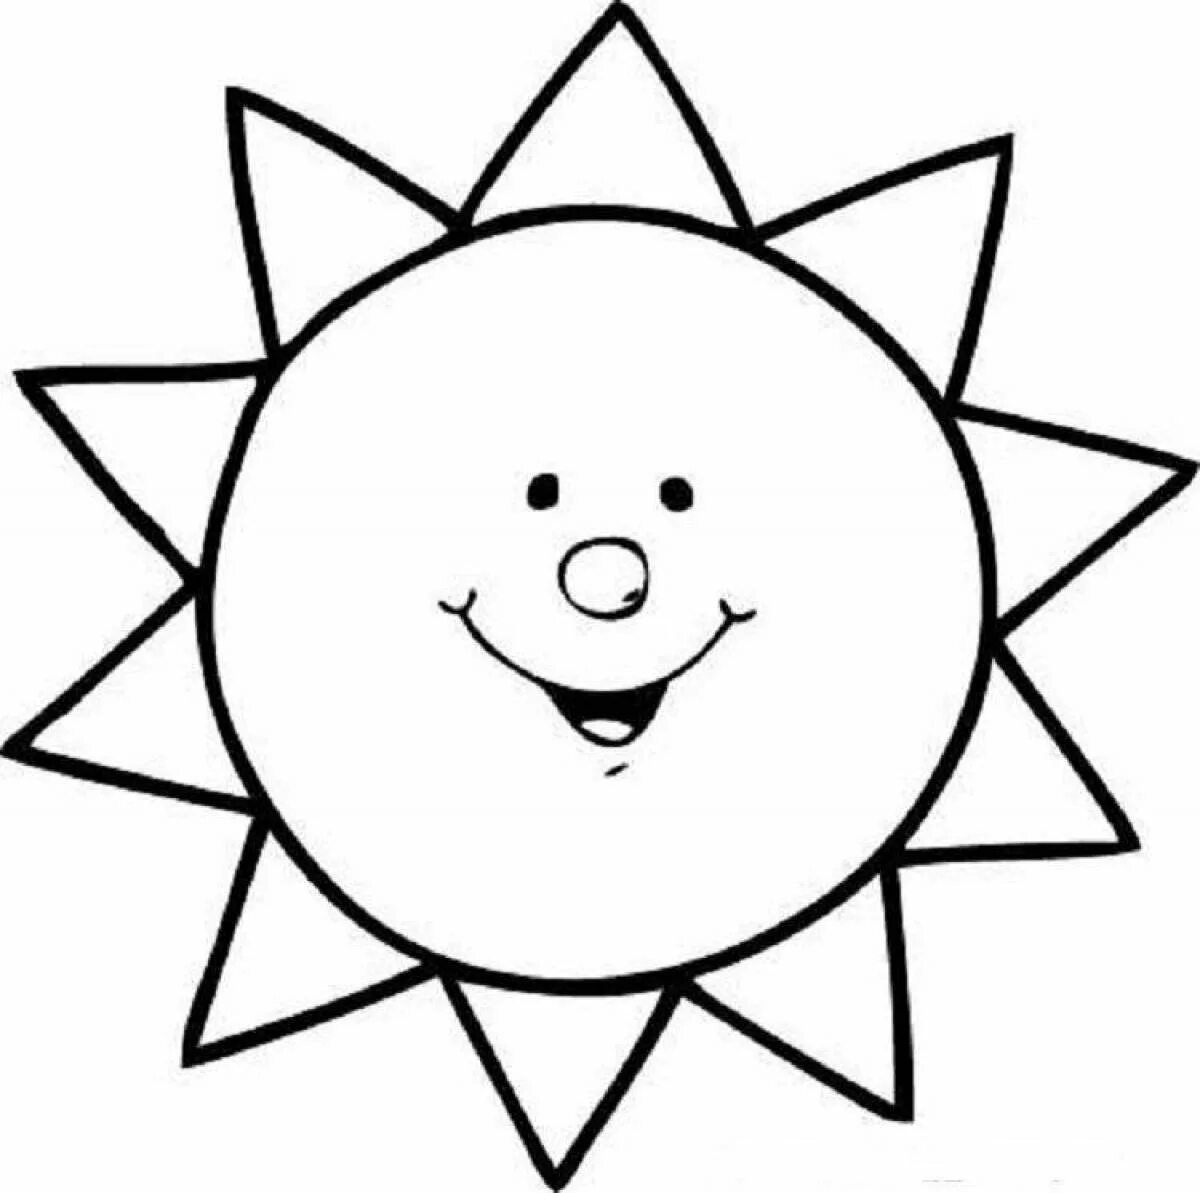 Раскраска. Солнышко. Солнце раскраска. Солнышко раскраска для детей. Солнце раскраска для малышей. Раскраски для детей 3 лет солнышко